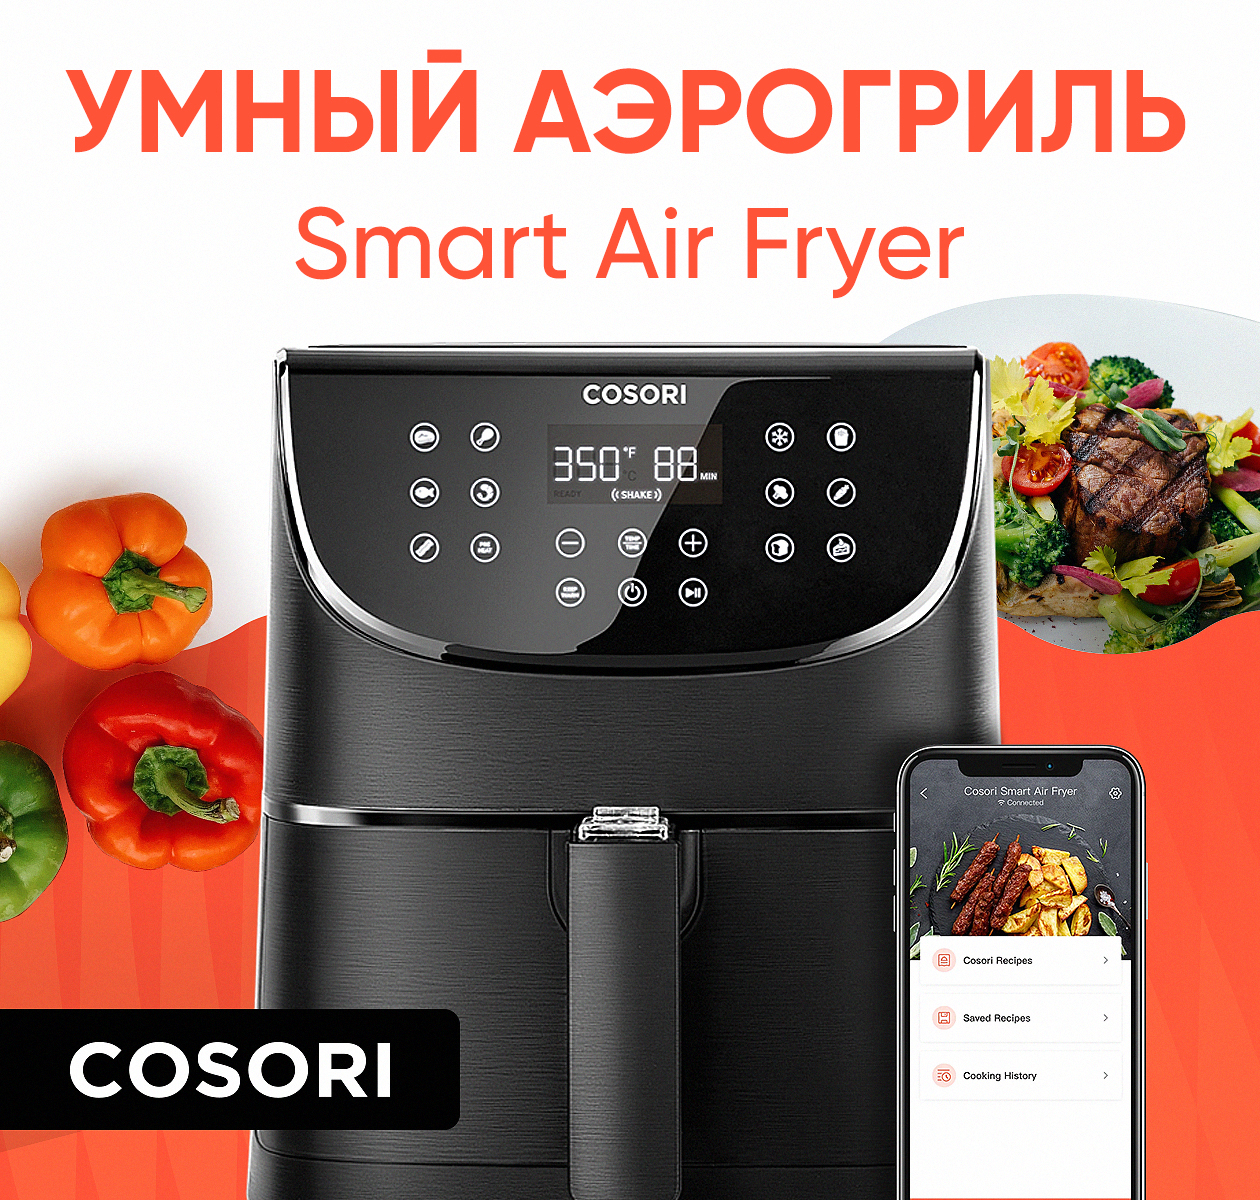 Аэрогриль COSORI Smart Air Fryer CS158-AF черный аэрогриль xiaomi mi smart air fryer white maf02 европейская версия